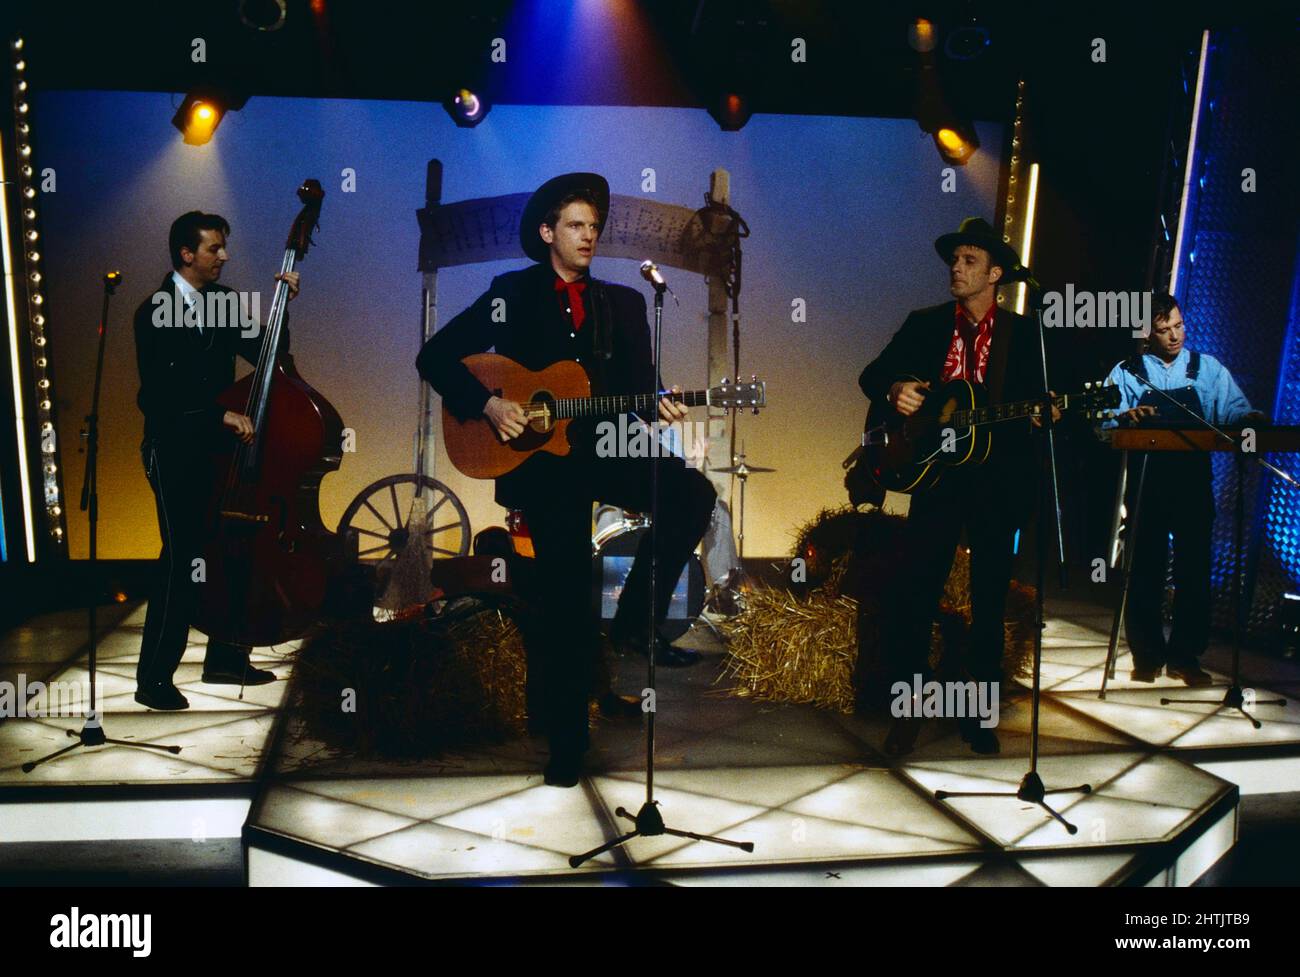 BR5-49, amerikanische Country-Band, bei einem Auftritt in der Show 'Power Night - Eine amerikanische Nacht', Deutschland 1996. Stock Photo